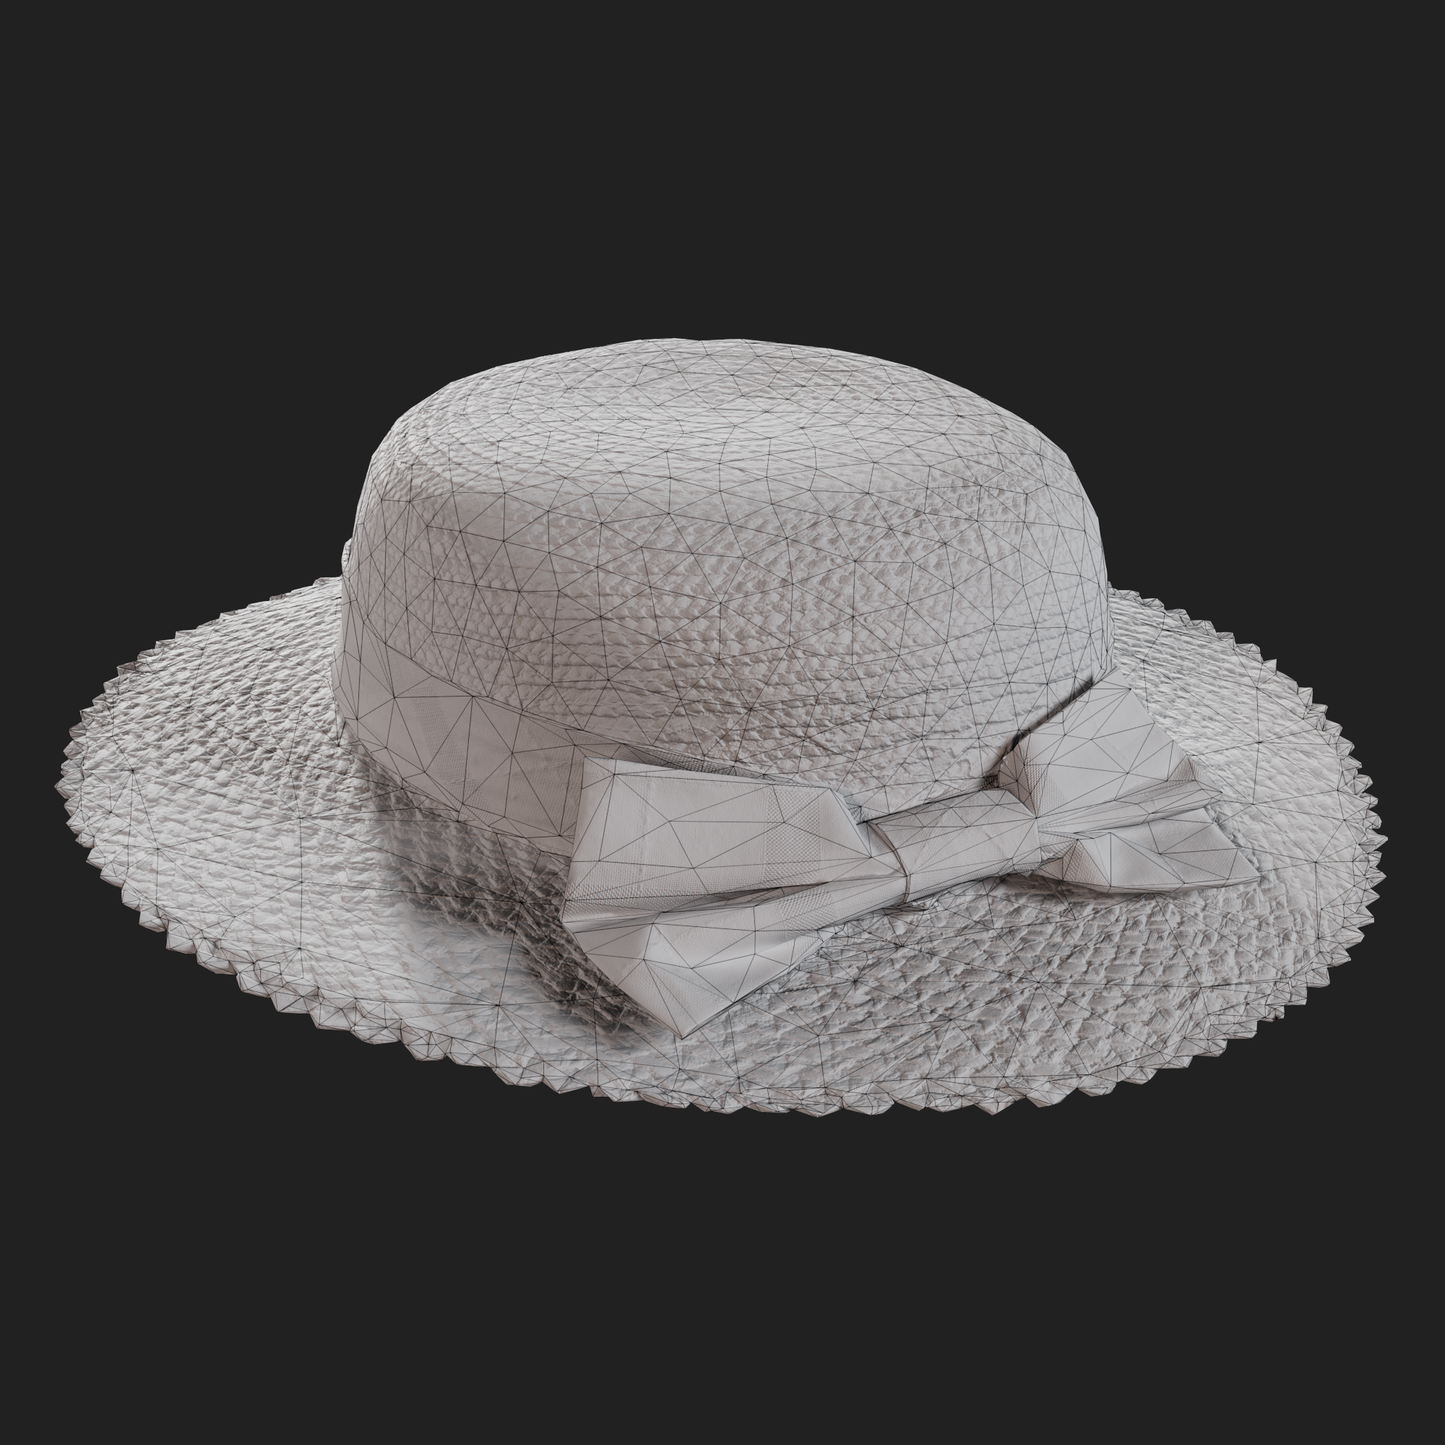 Women's Victorian Straw Hat